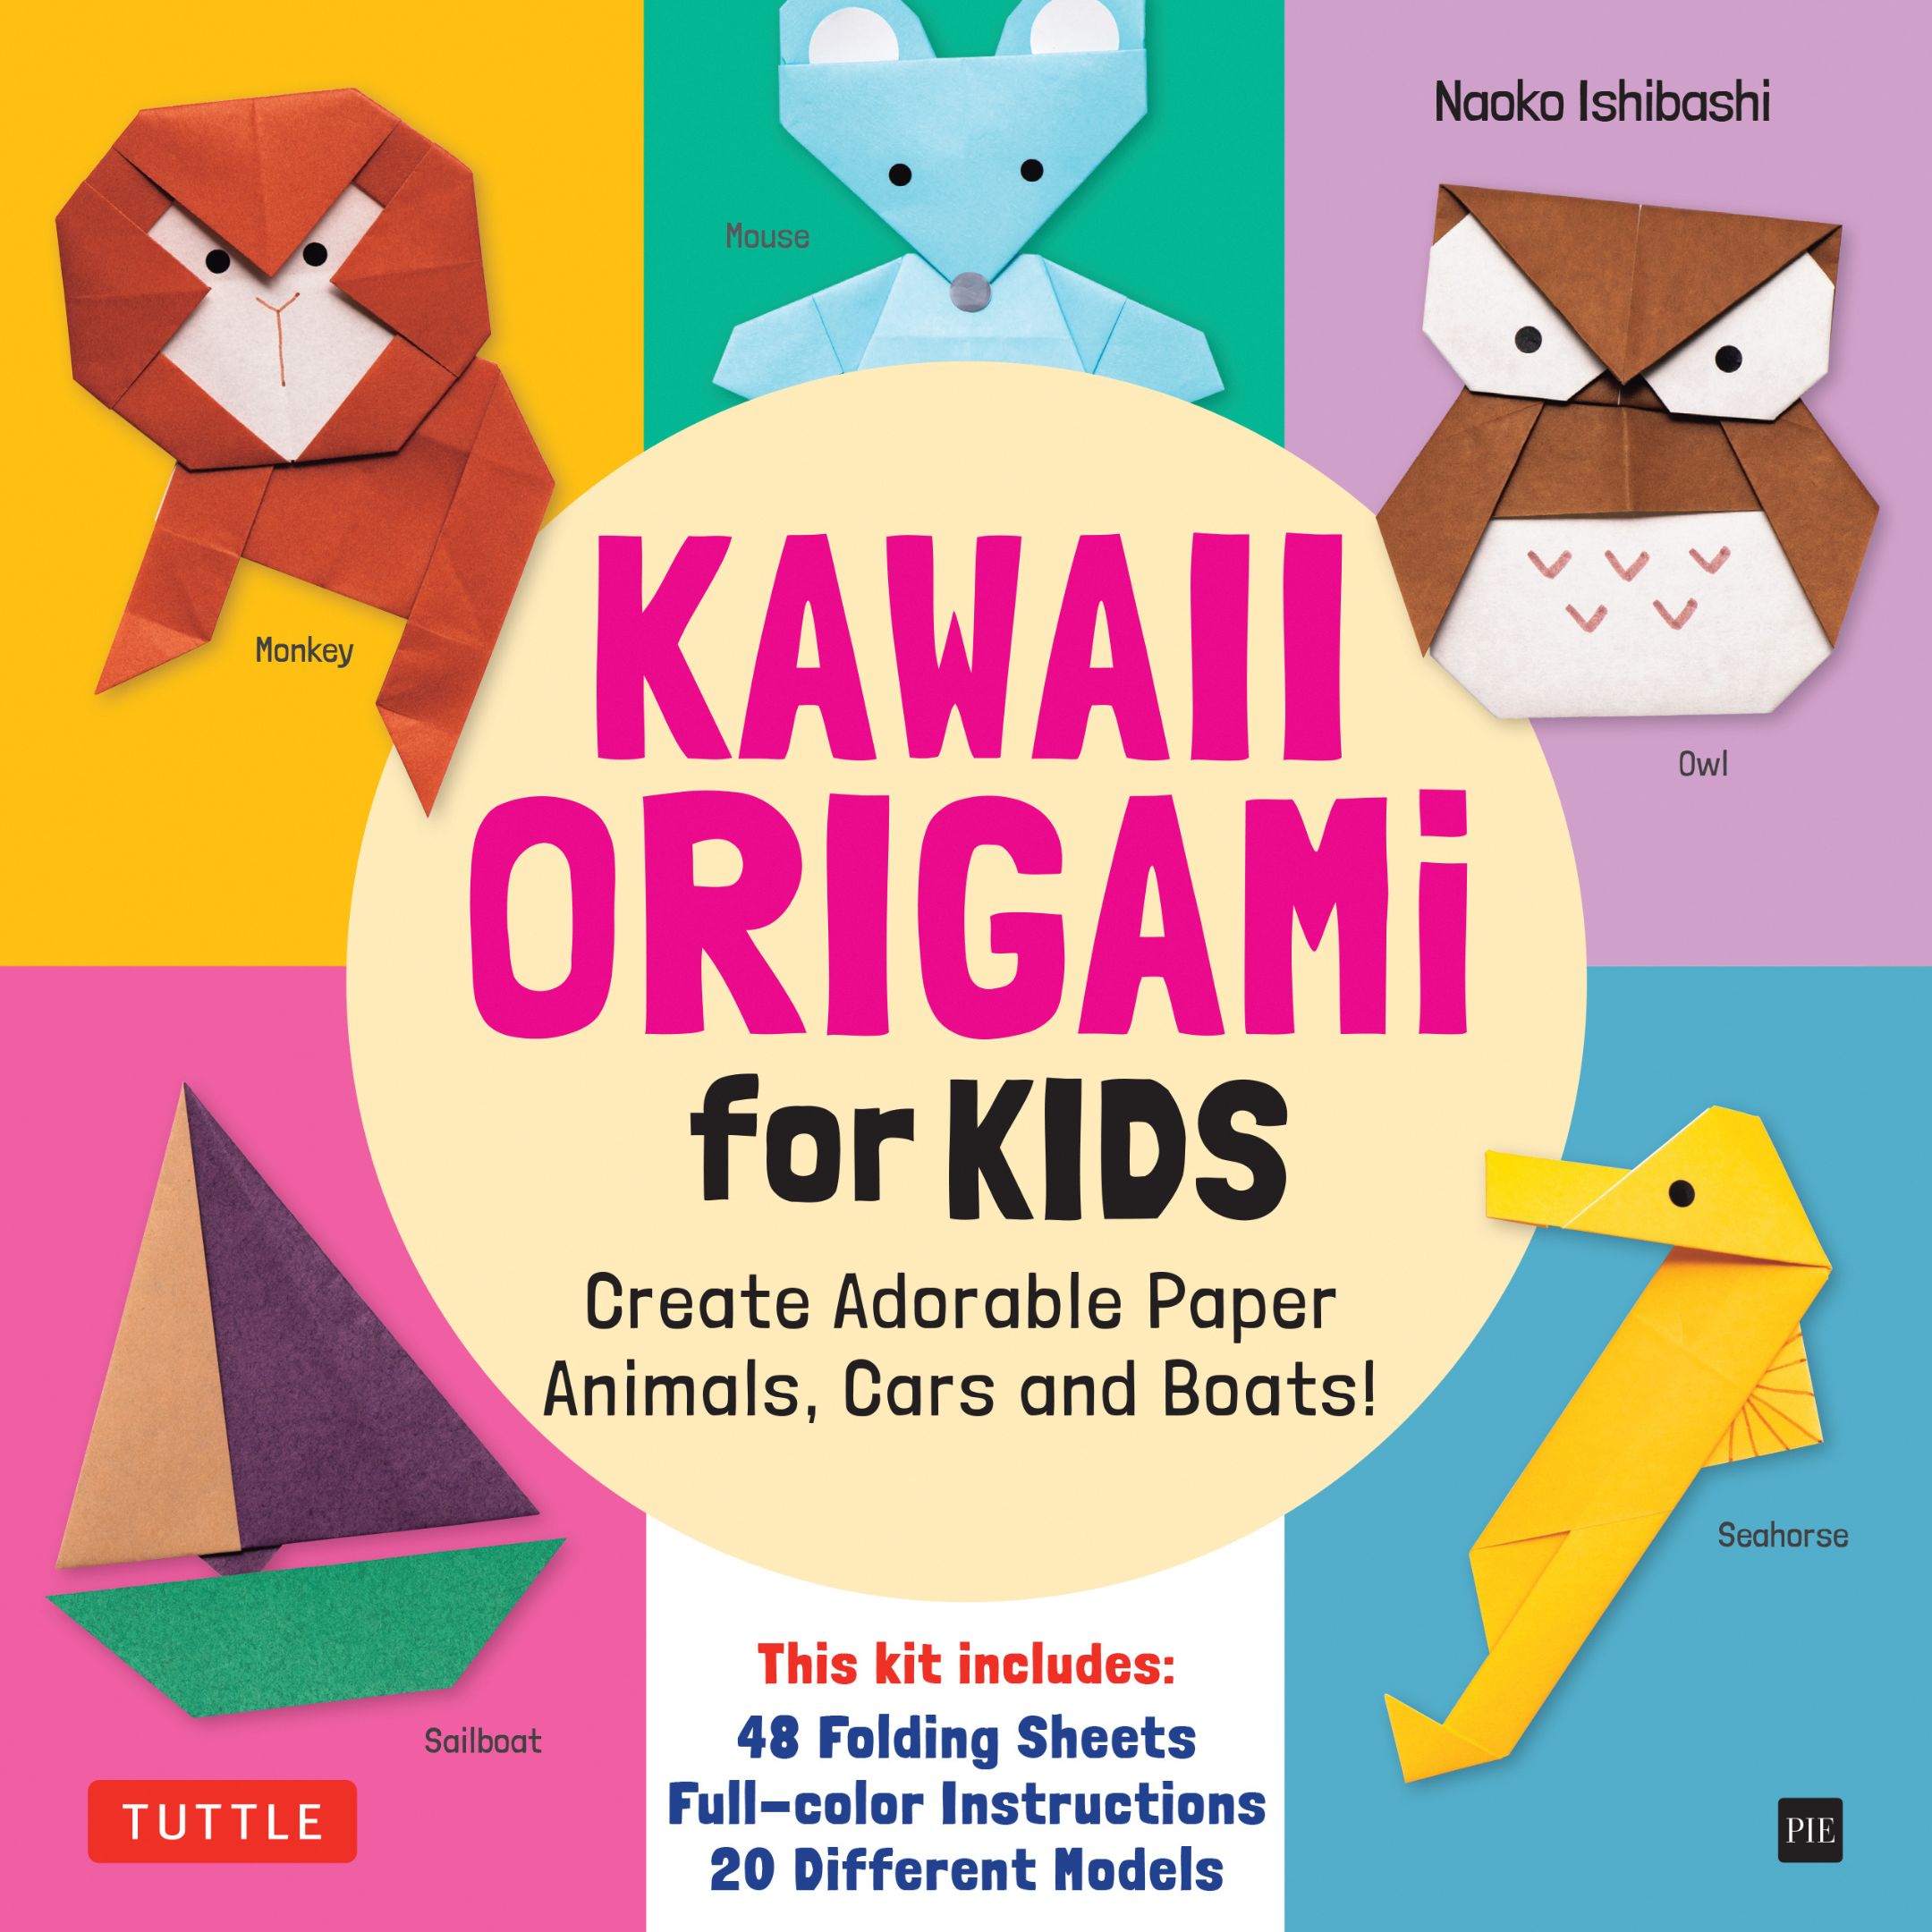 Origami Games for Kids Kit (9780804848527) - Tuttle Publishing